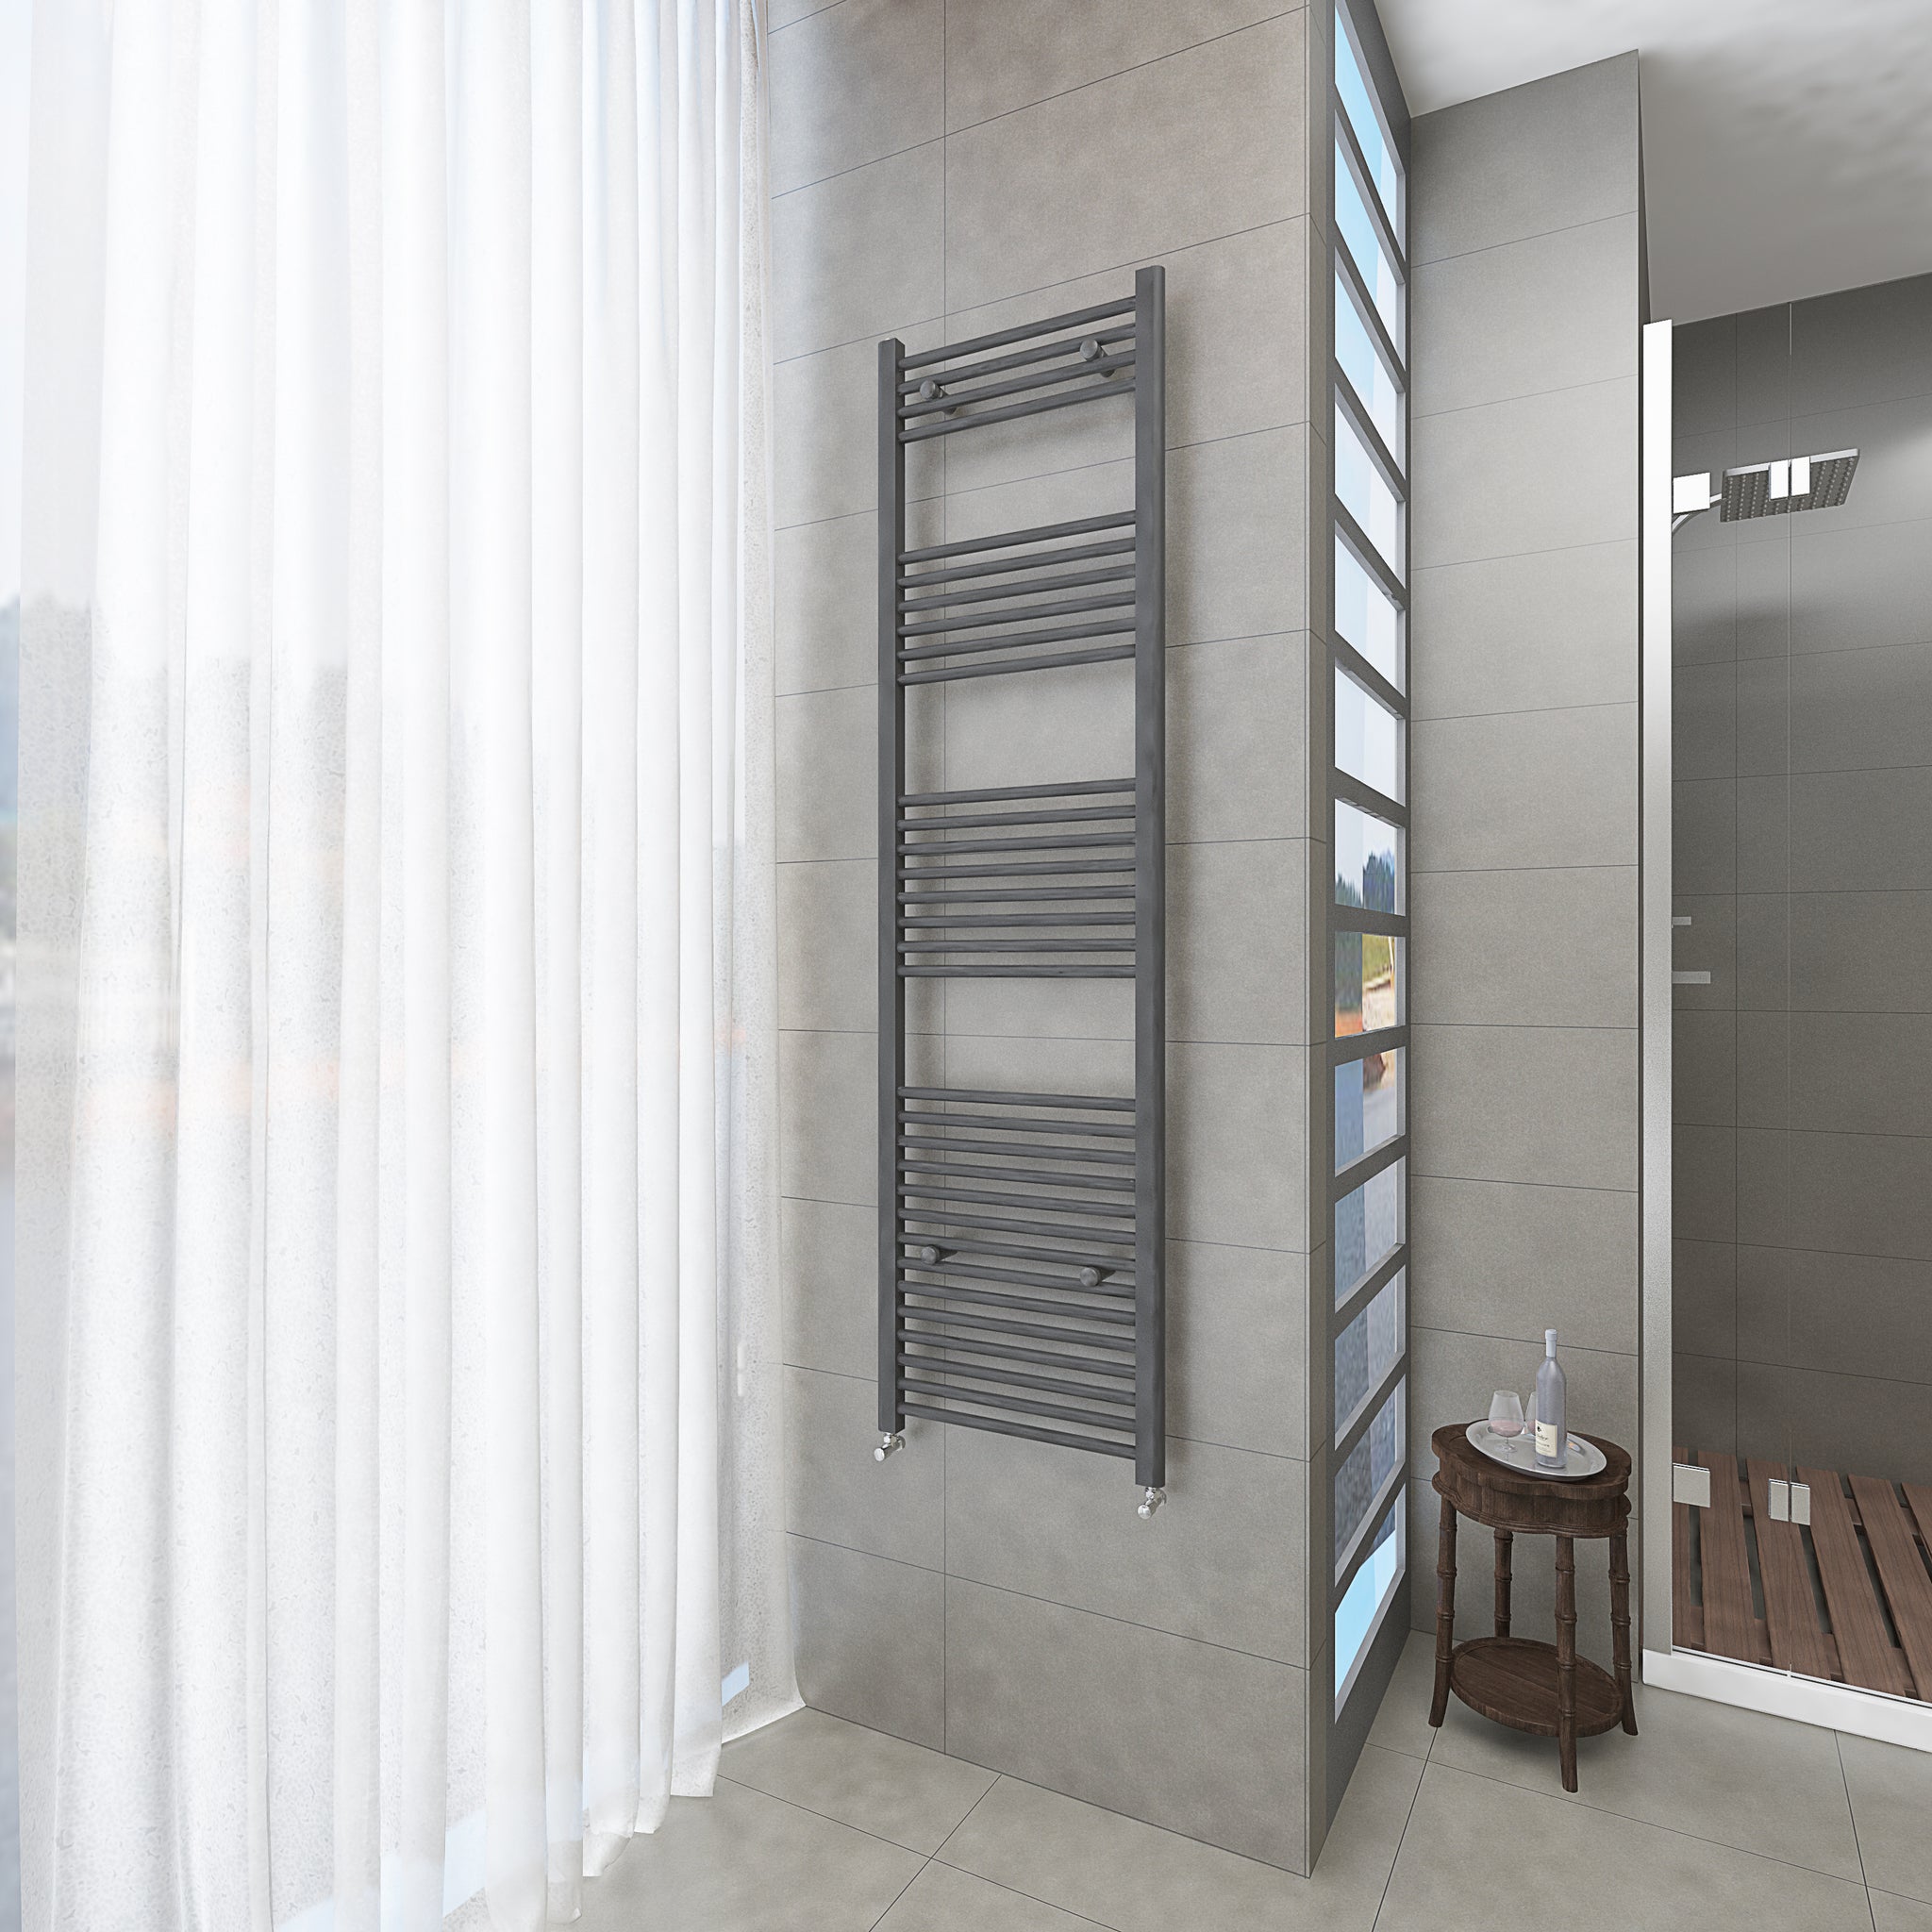 Badheizkörper Grau/Anthrazit - 180x50 CM Heizkörper und Handtuchtrockner in einem - Seitlicher Anschluss - Rauchfreie Kohleheizung für das Badezimmer